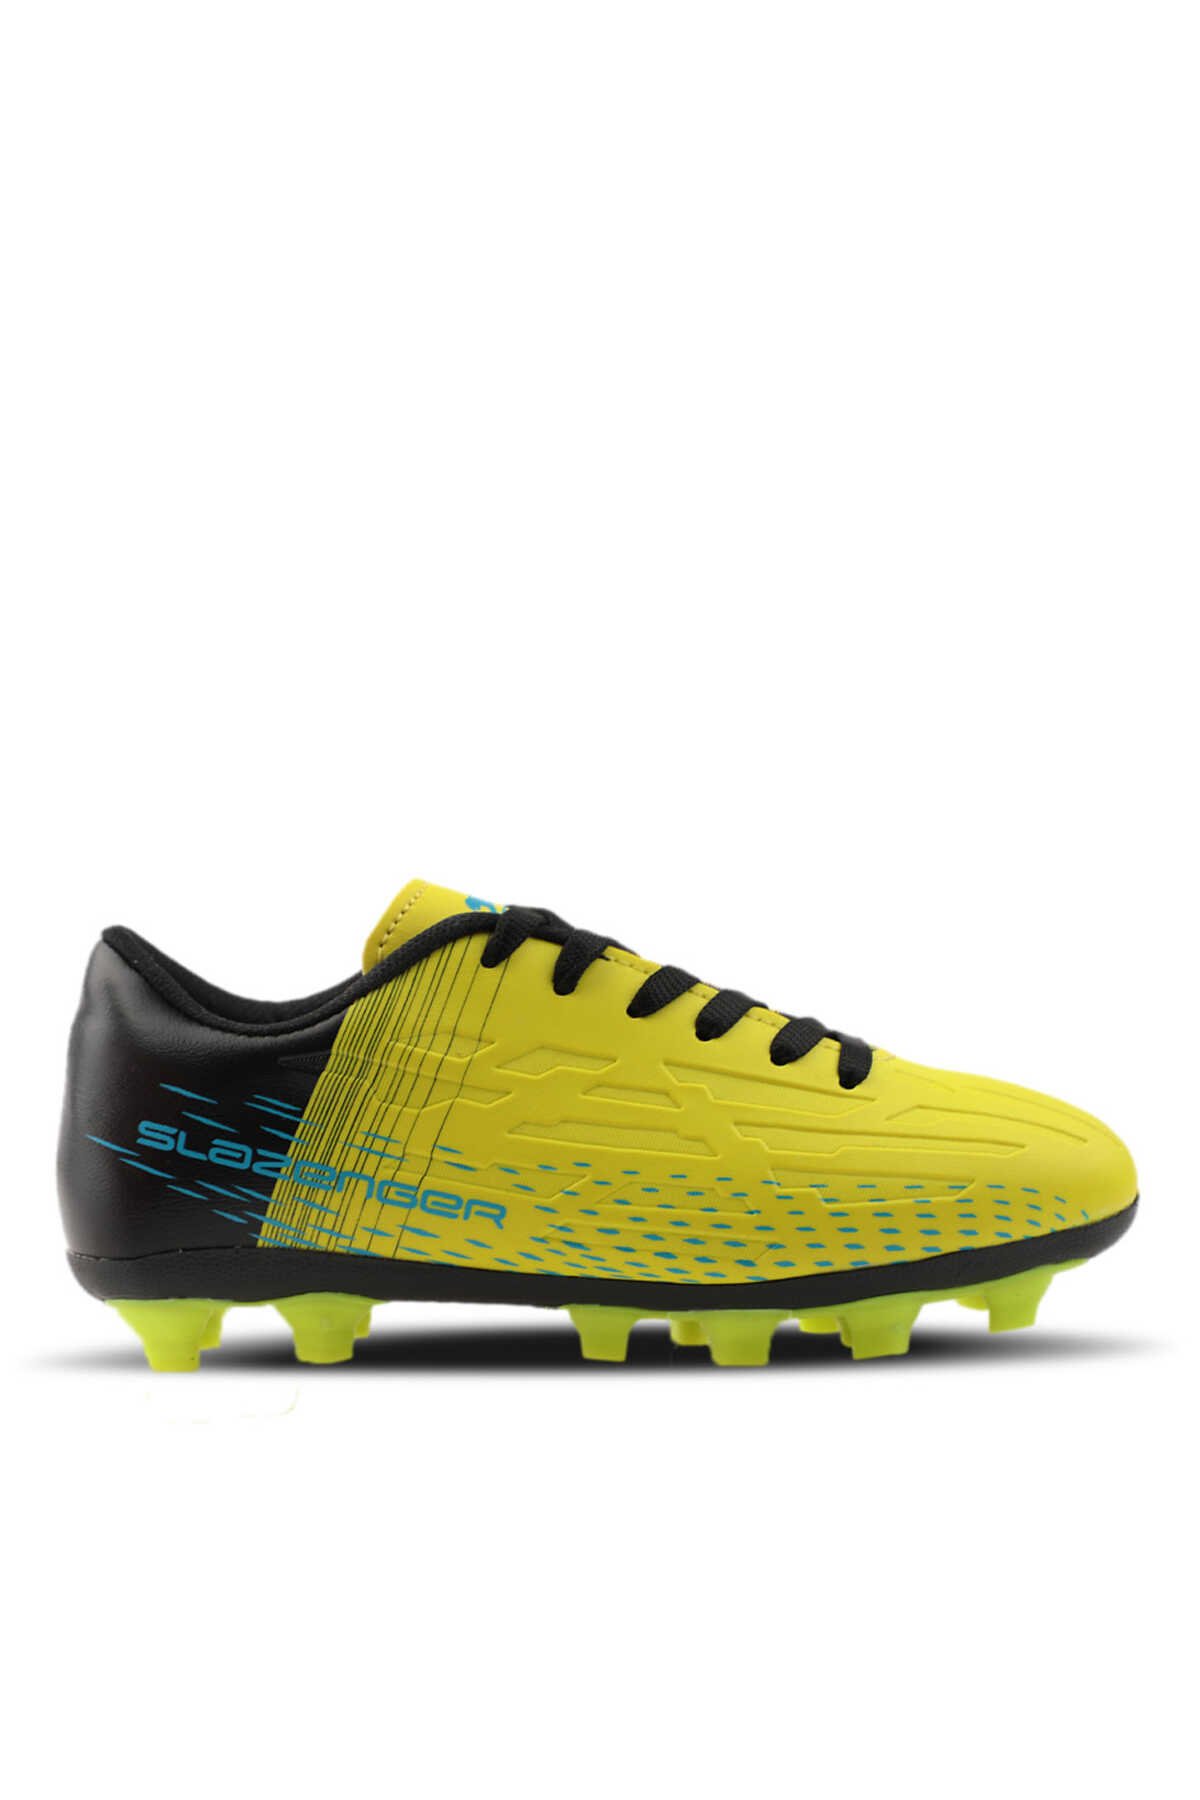 Slazenger - SCORE I KR Futbol Erkek Krampon Ayakkabı Neon Sarı / Siyah